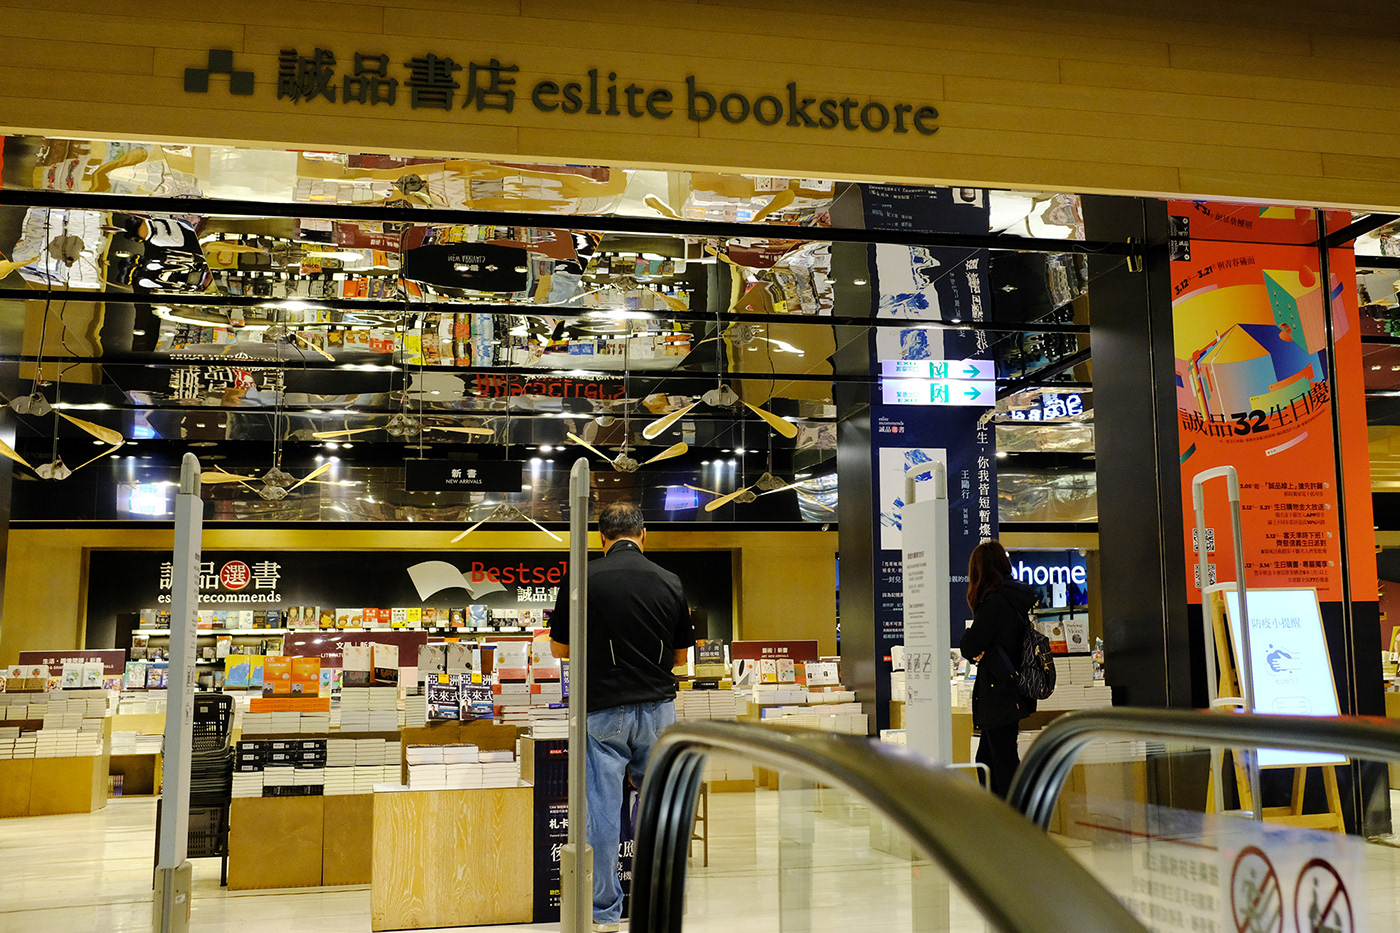 anniversary Bookstore cake eslite Event Retail yuchenglin 林郁程 活動視覺